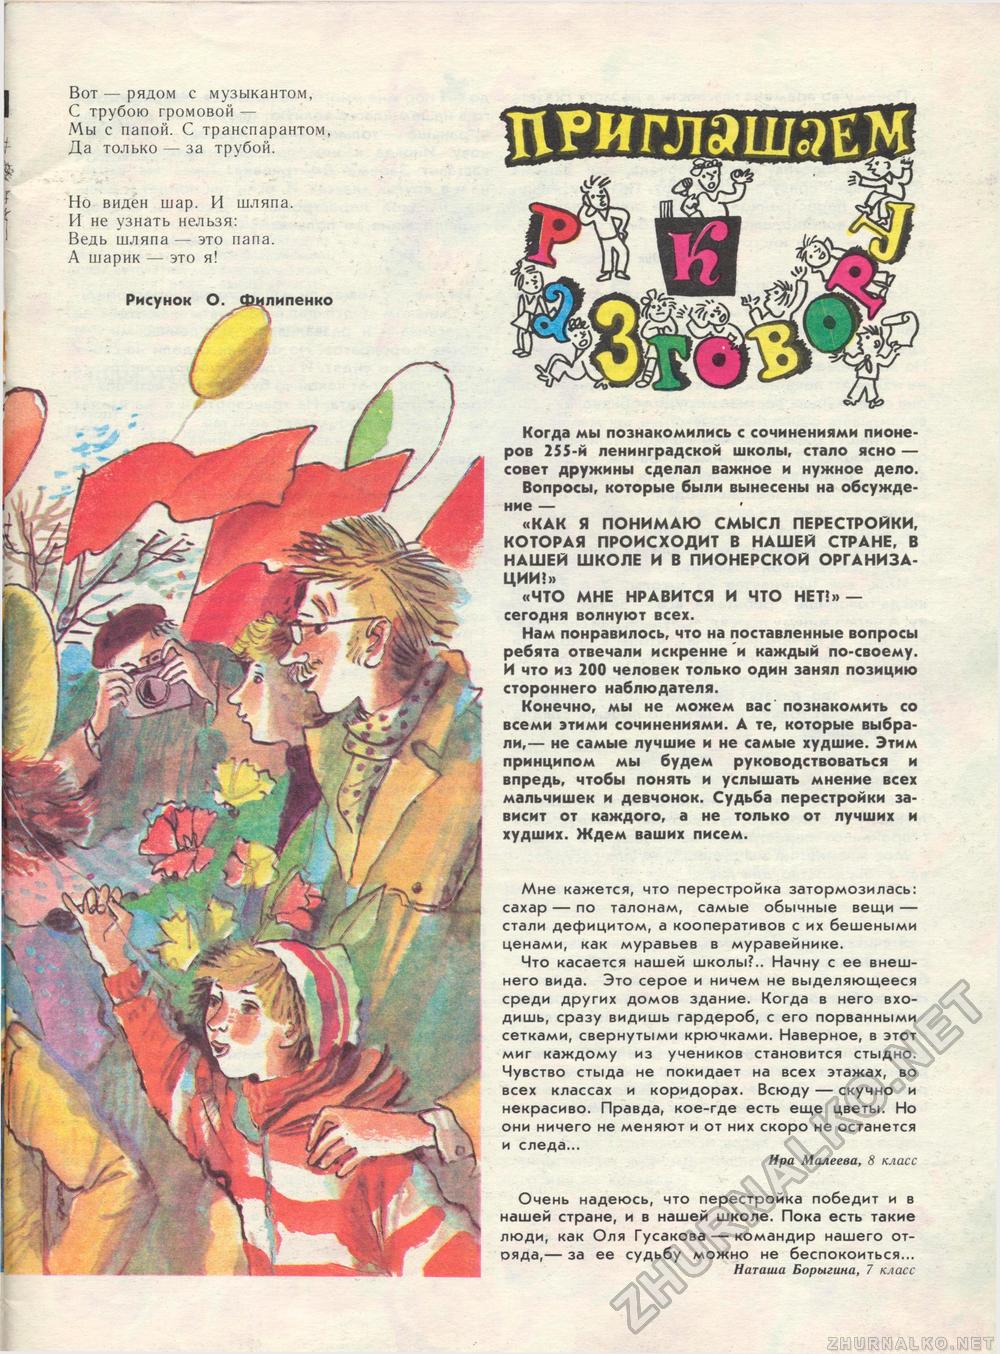  1989-05,  3